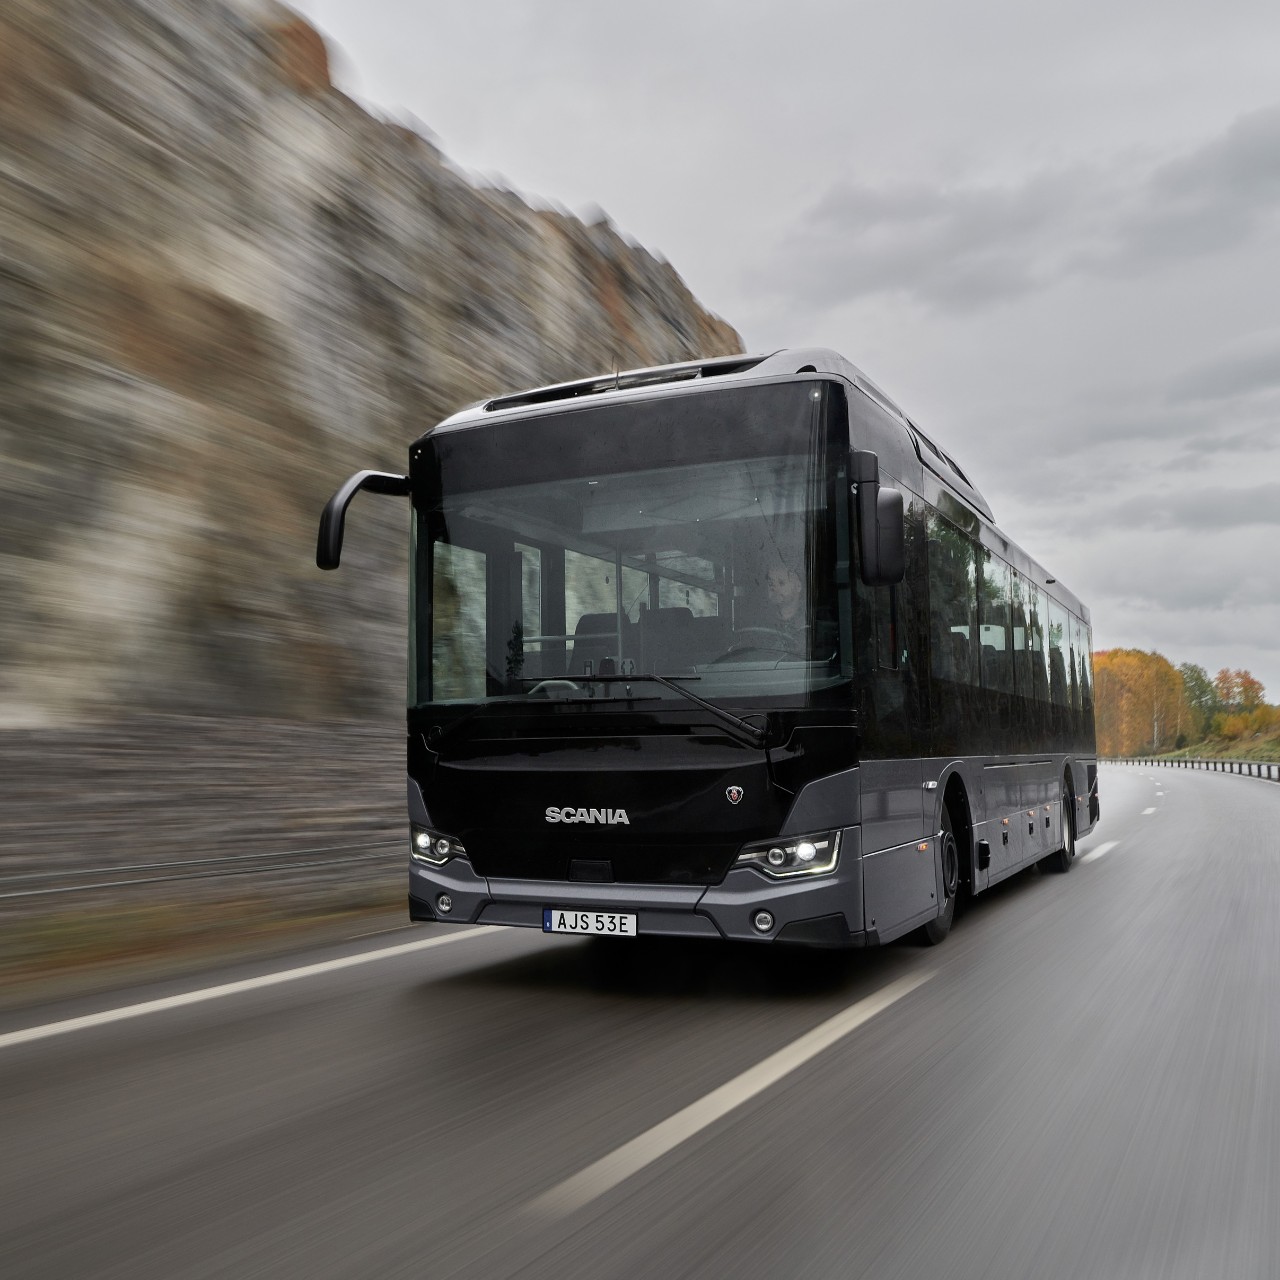 Scania buss för stads- och regiontrafik